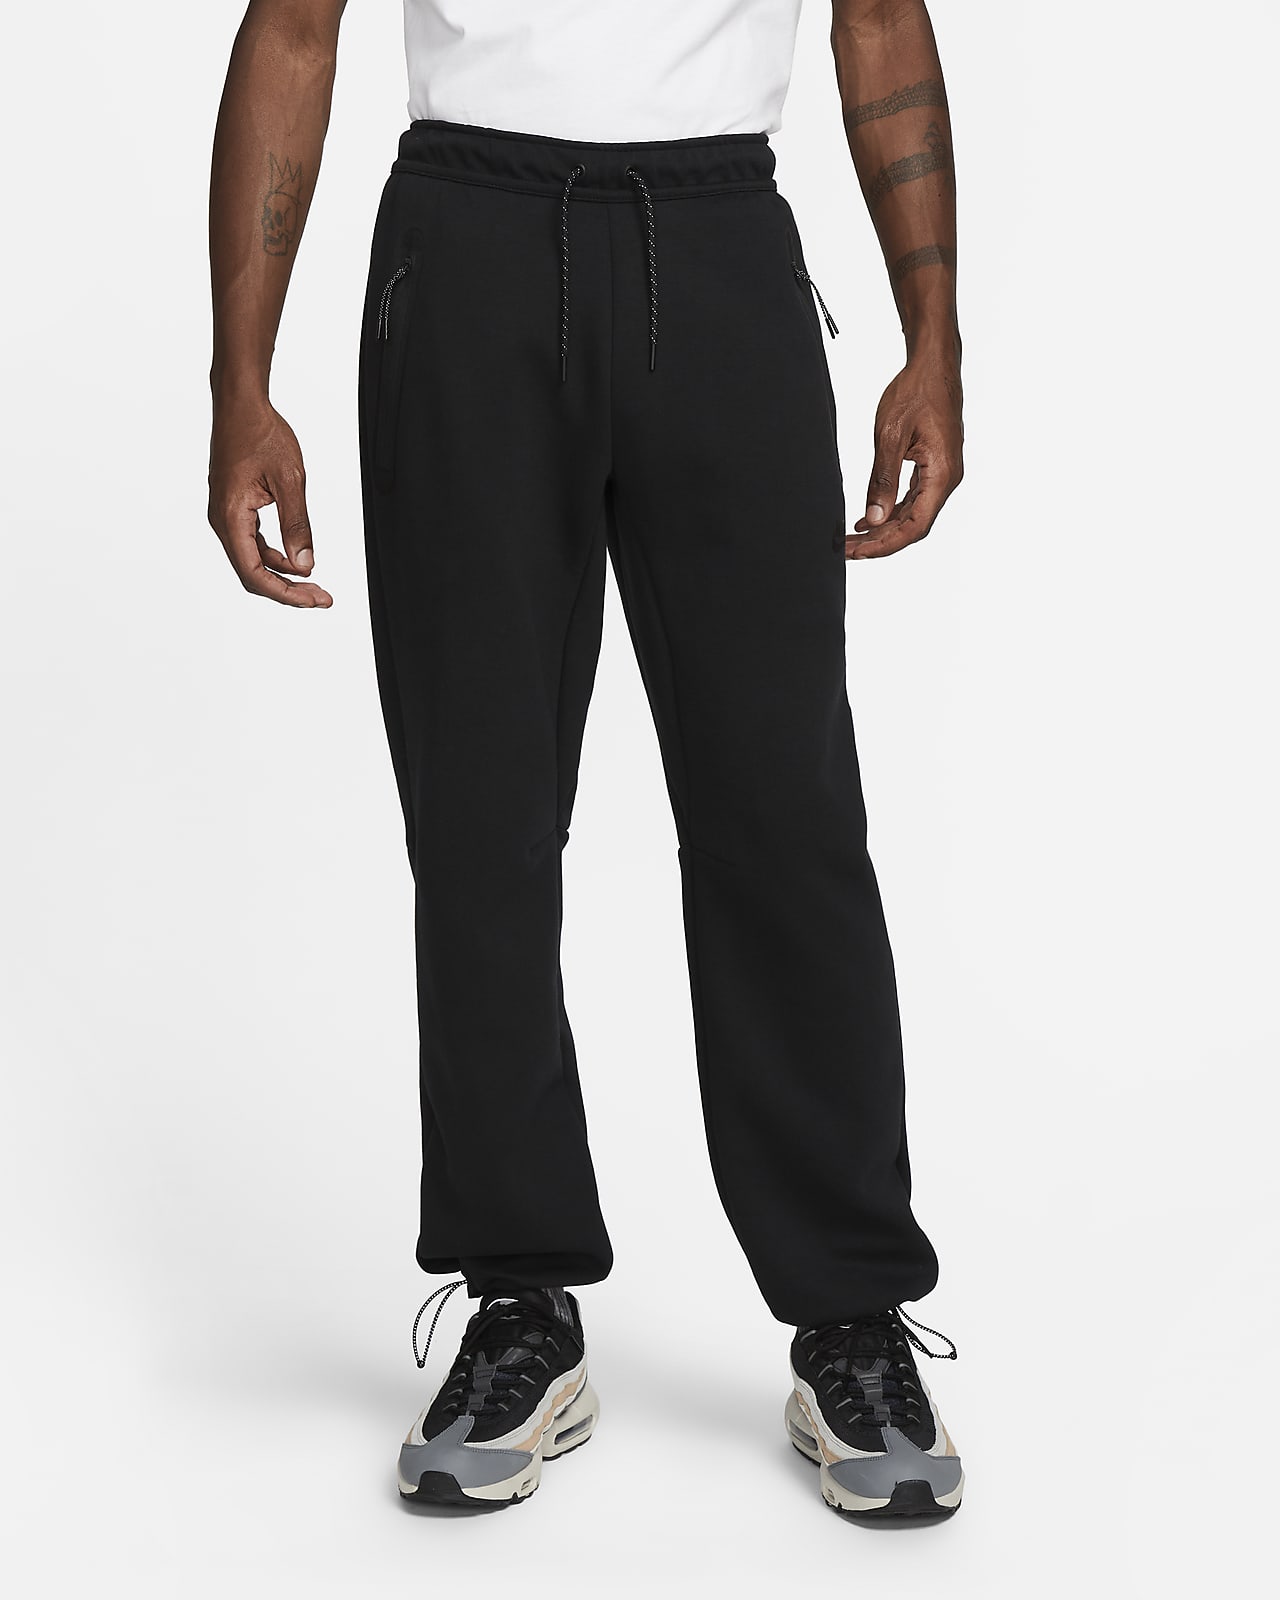 Sportswear Tech Fleece Men's Pants. Nike.com